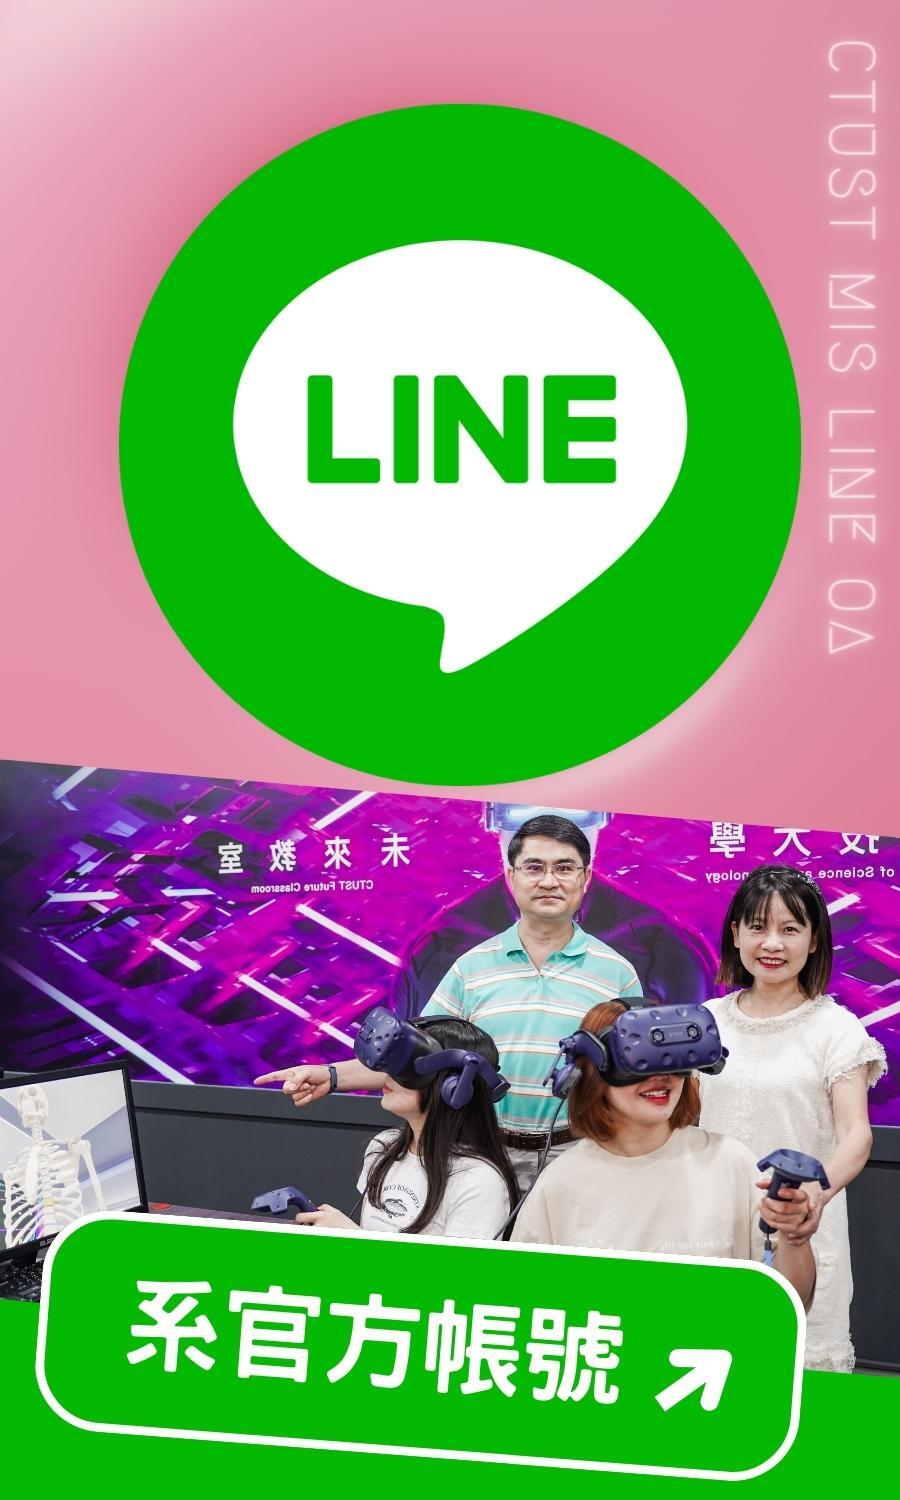 中臺資管-系官方LINE-VR未來教室